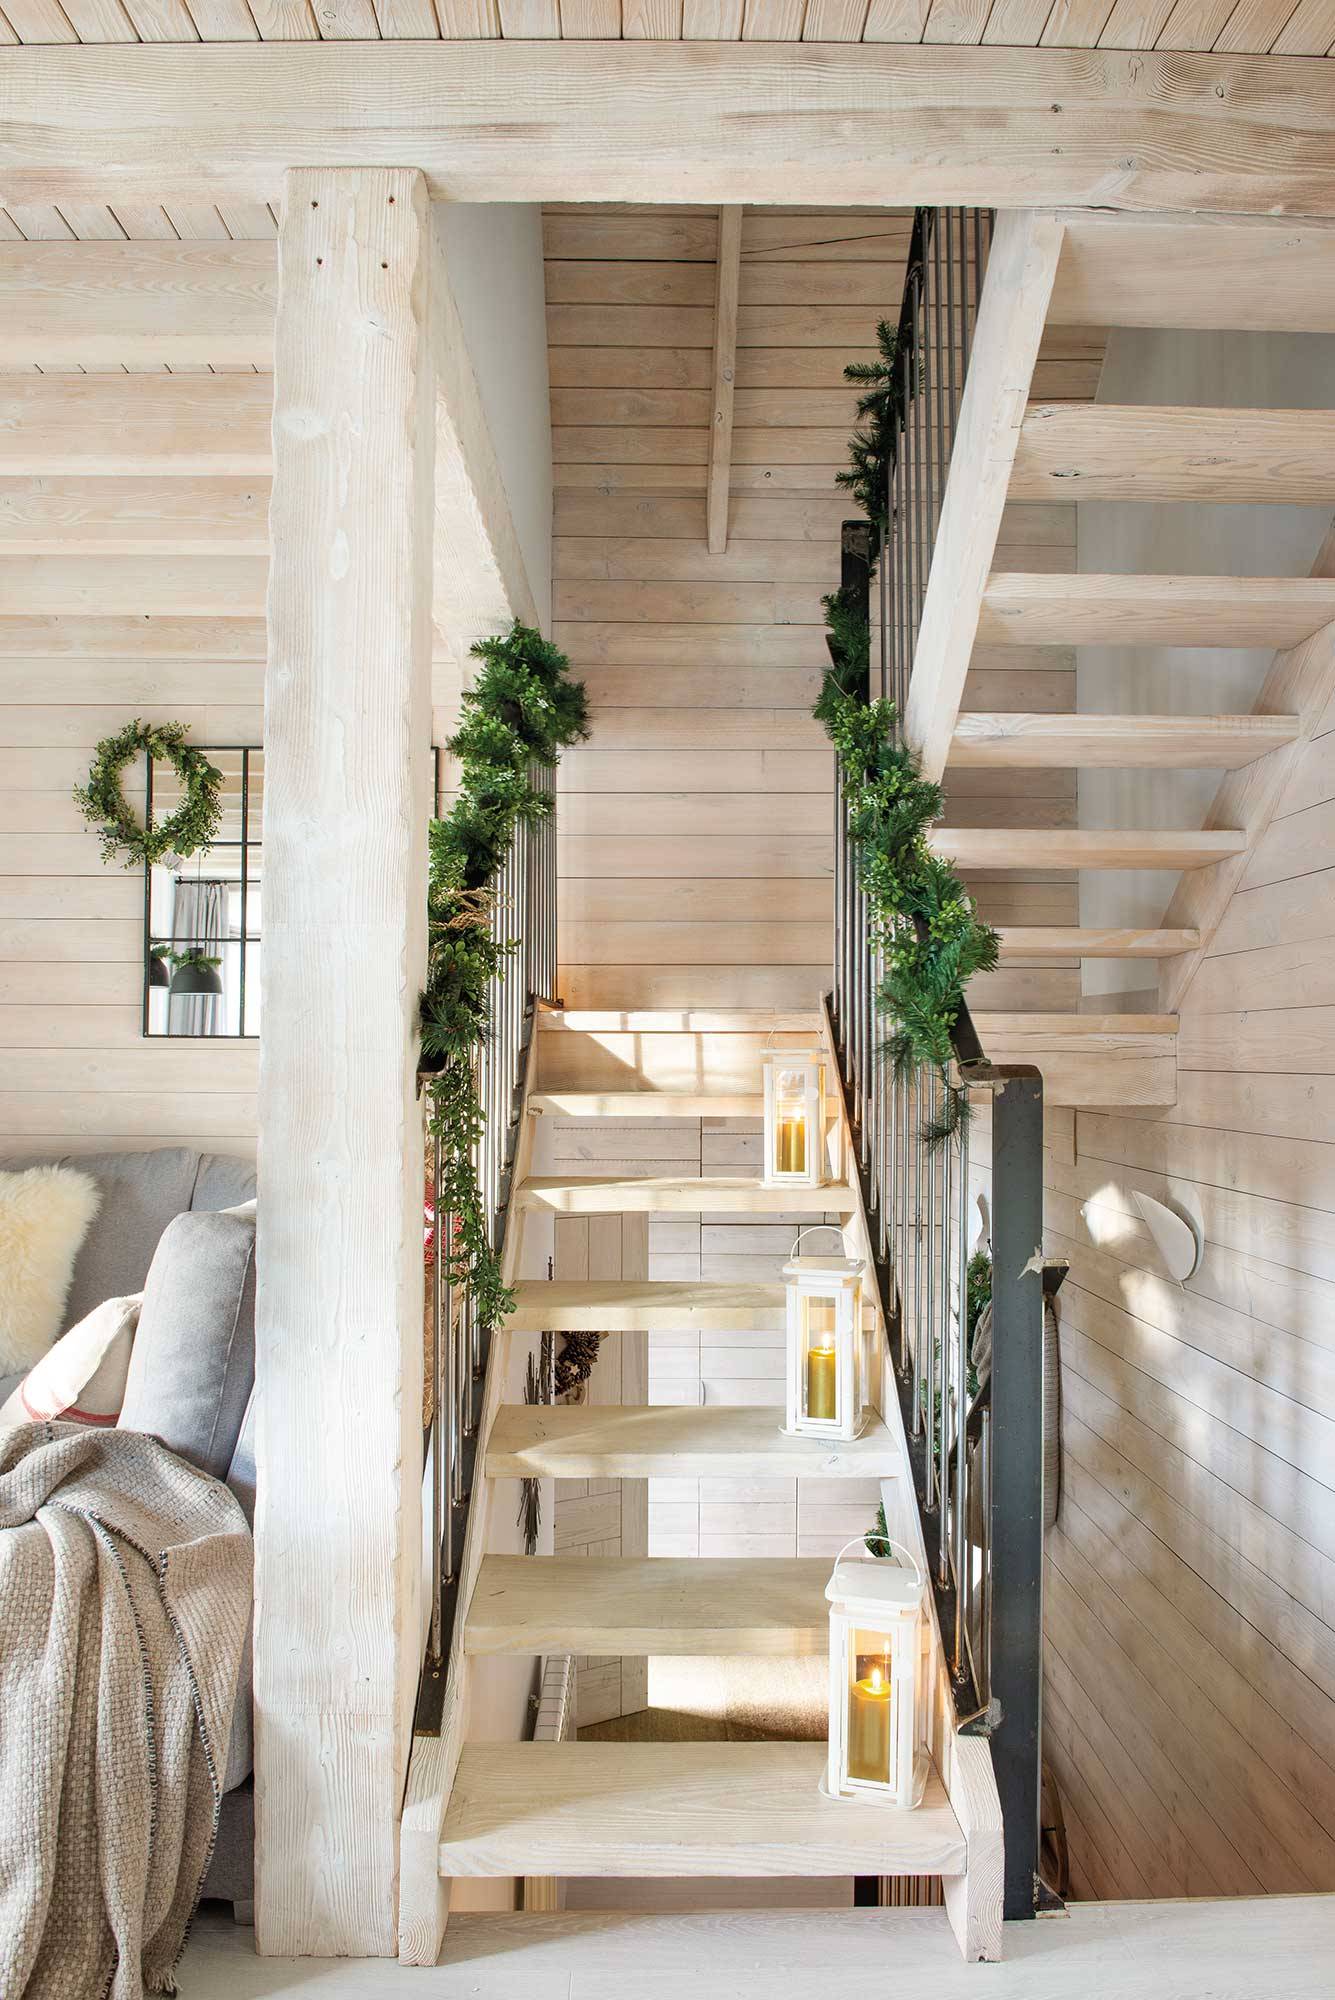 Escalera de madera de casa de montaña con guirnalda de verdes y farolillos_00515438